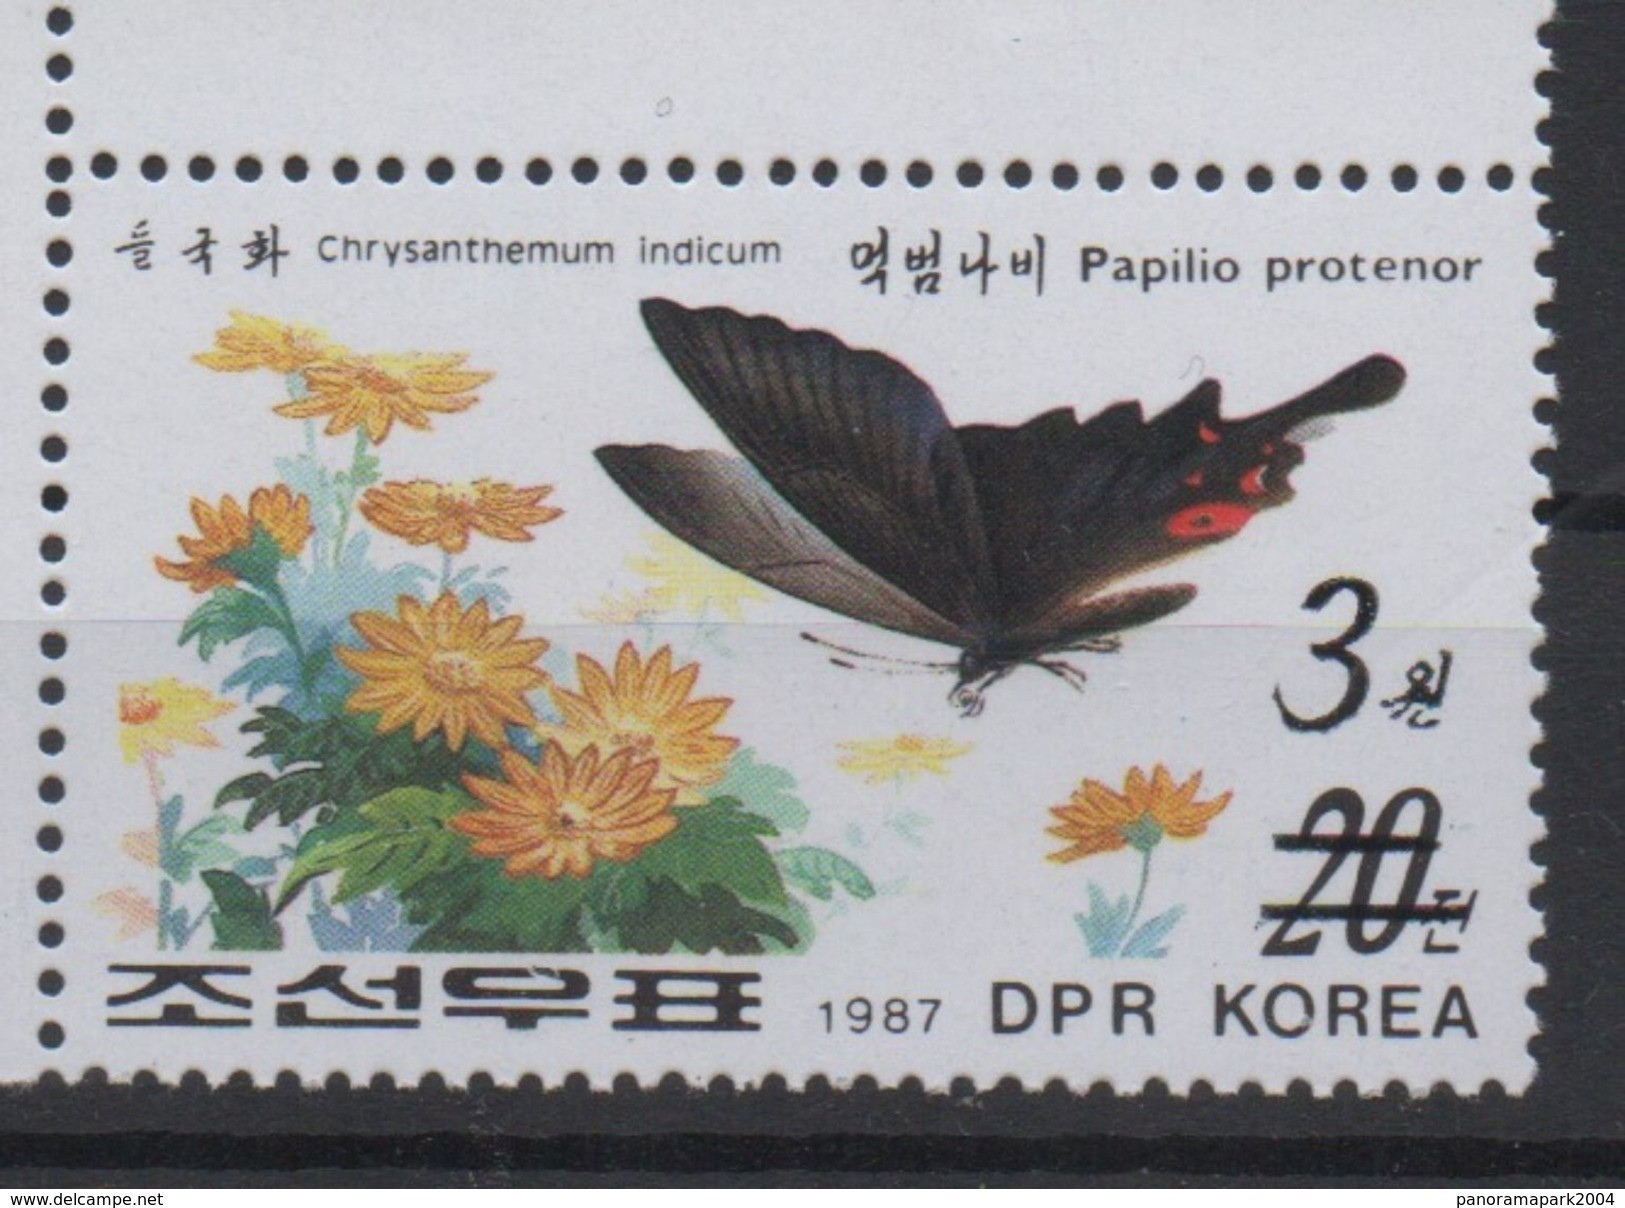 North Korea Coréd Du Nord 2006 Mi. 5048 Surchargé OVERPRINT Faune Fauna Papillon Schmetterling Butterfly Moth MNH** RARE - Papillons